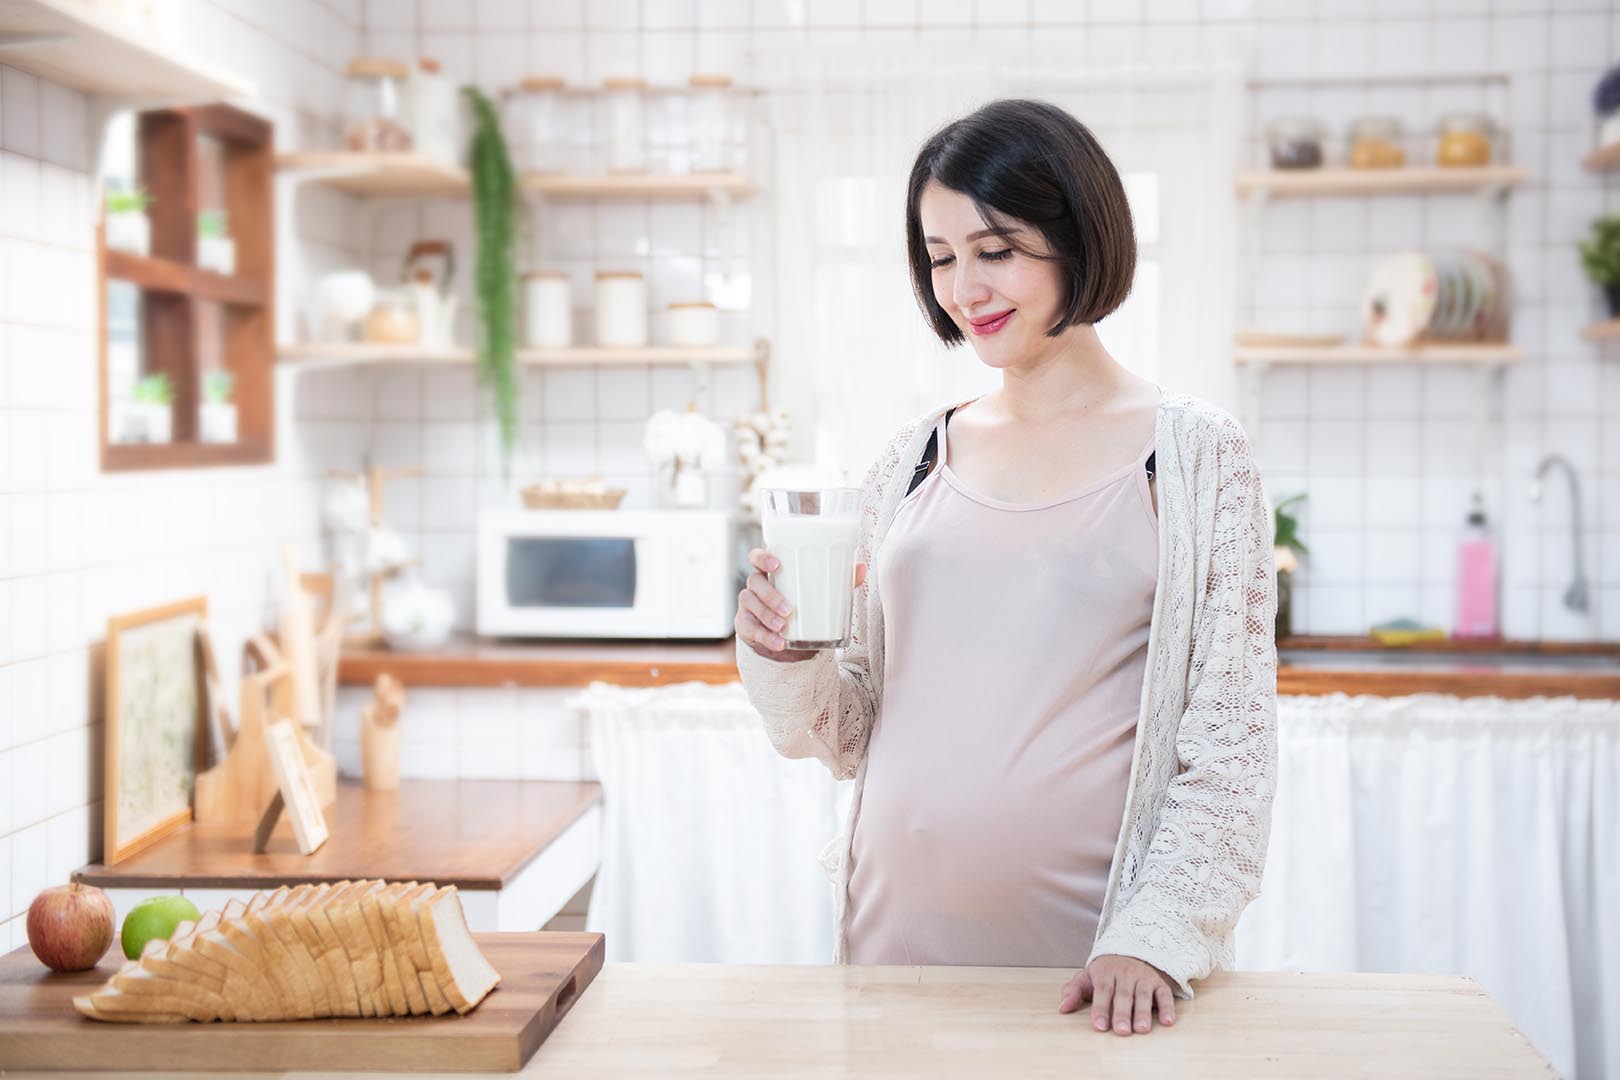 Mengapa ibu hamil membutuhkan asupan kalsium lebih banyak daripada wanita yang tidak dalam kondisi hamil